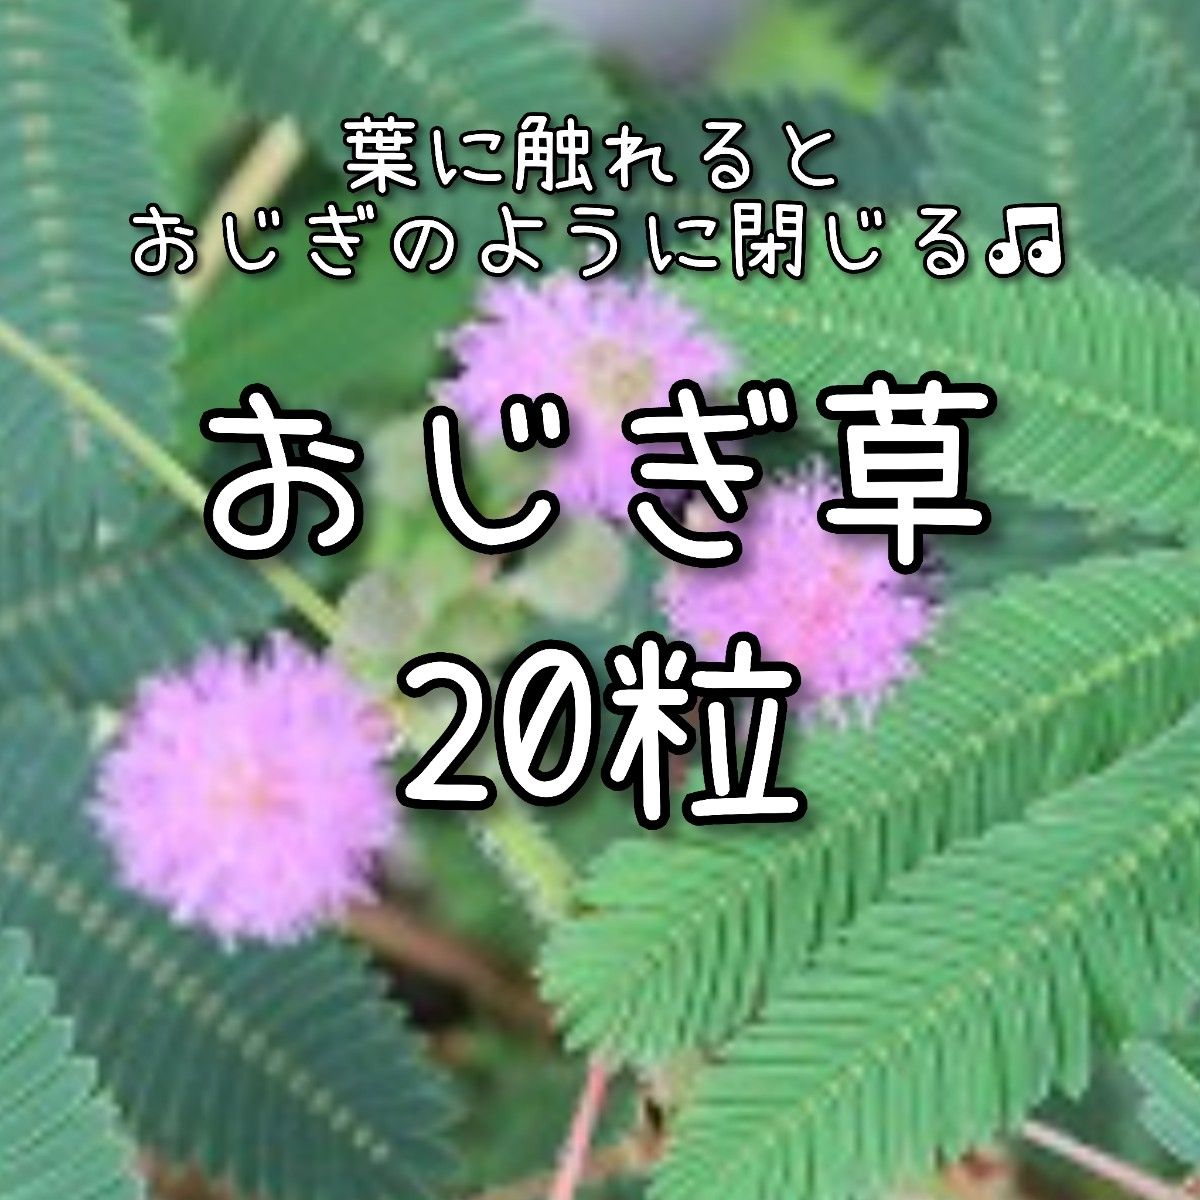 【おじぎ草のタネ】20粒 種子 種 オジギソウ 花